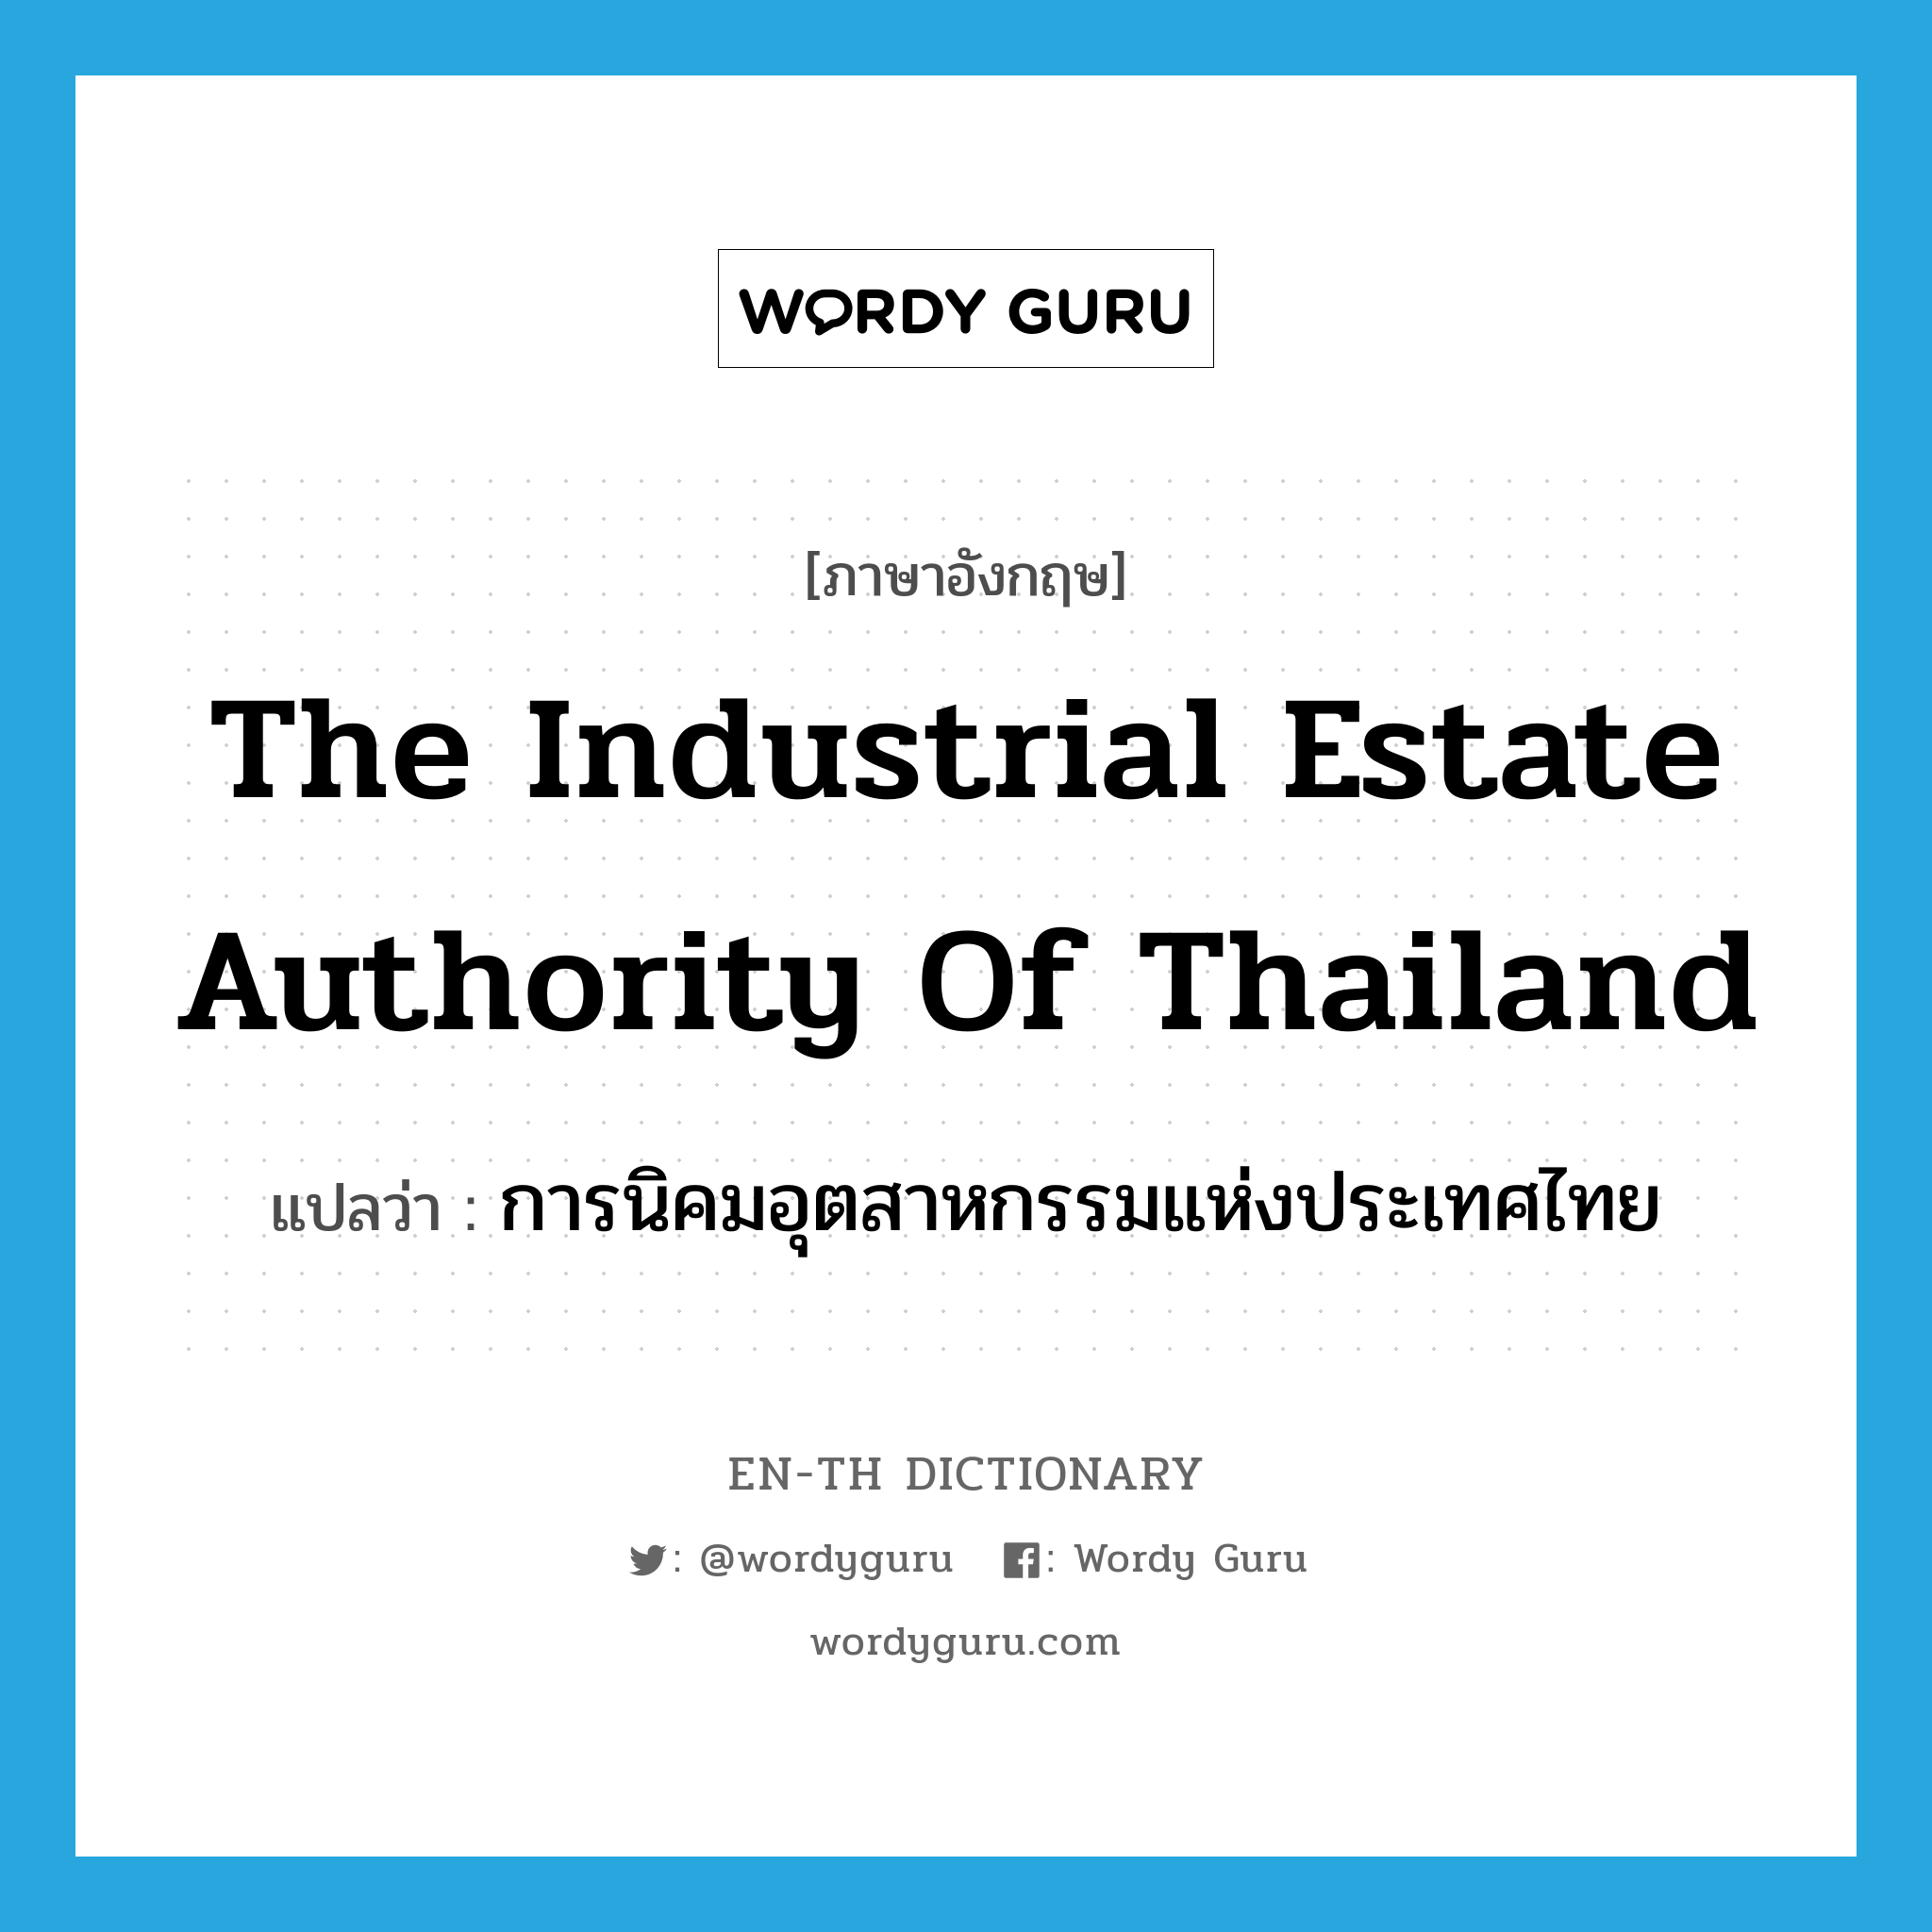 การนิคมอุตสาหกรรมแห่งประเทศไทย ภาษาอังกฤษ?, คำศัพท์ภาษาอังกฤษ การนิคมอุตสาหกรรมแห่งประเทศไทย แปลว่า The Industrial Estate Authority of Thailand ประเภท N หมวด N